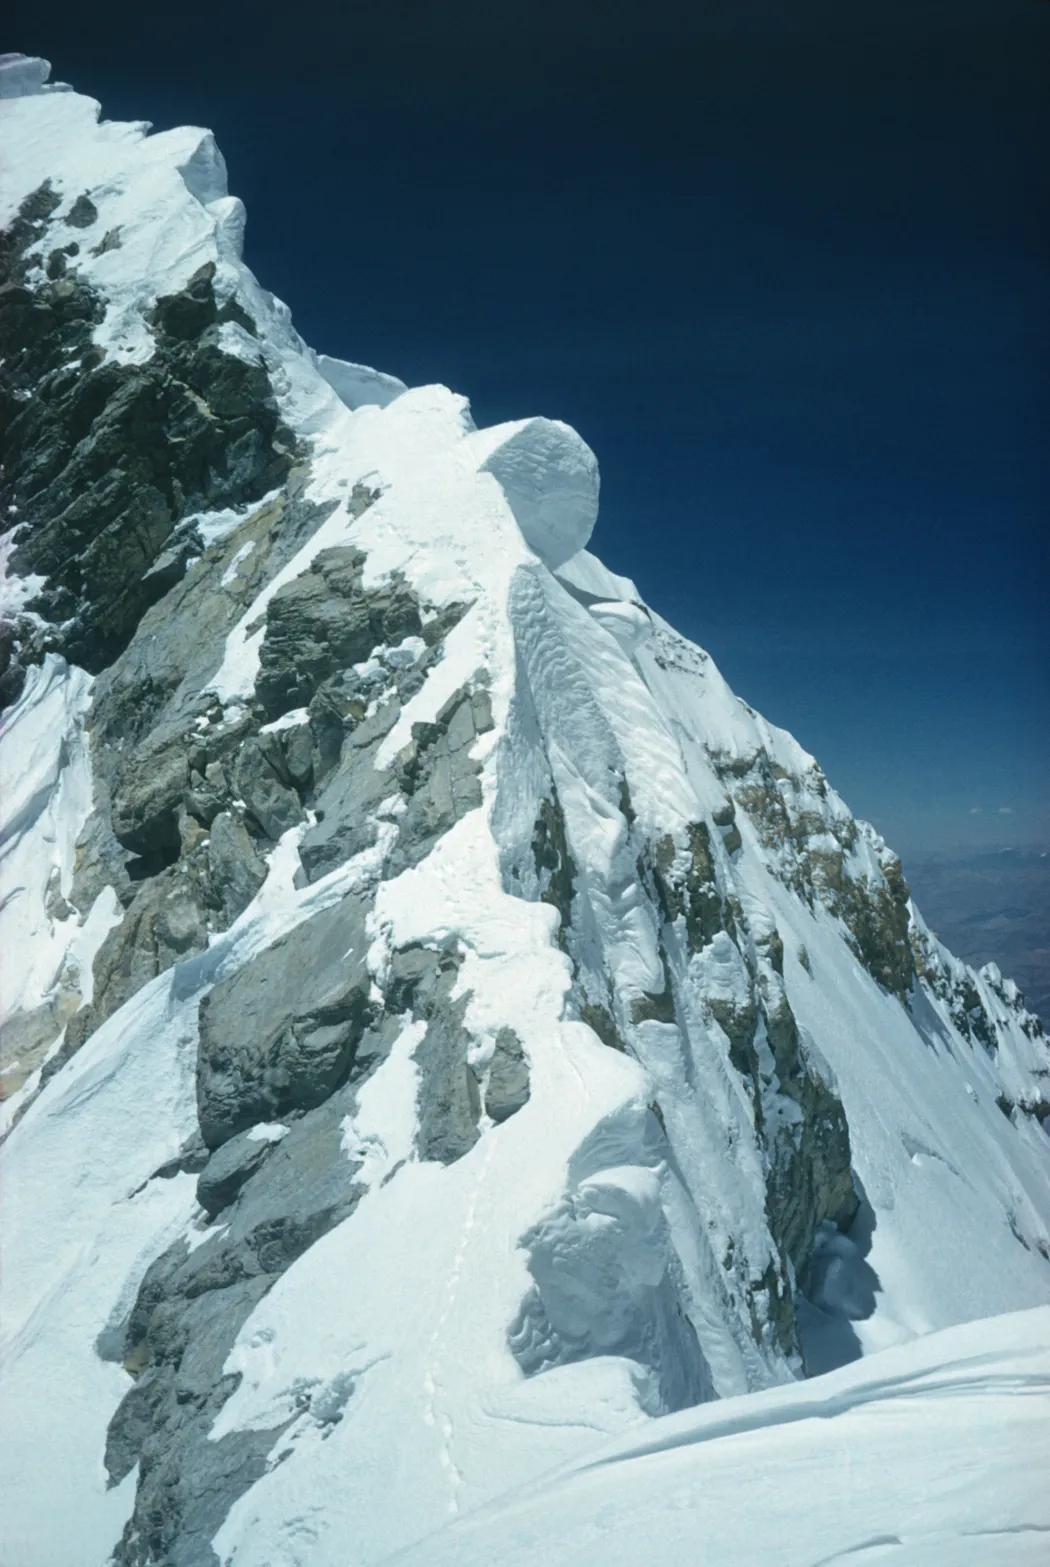 Tendzing és Hillary lábnyomai az Everest csúcsáról lefelé jövet 1953. május 29-én – Fotó: Edmund Hillary / Royal Geographical Society / Getty Images